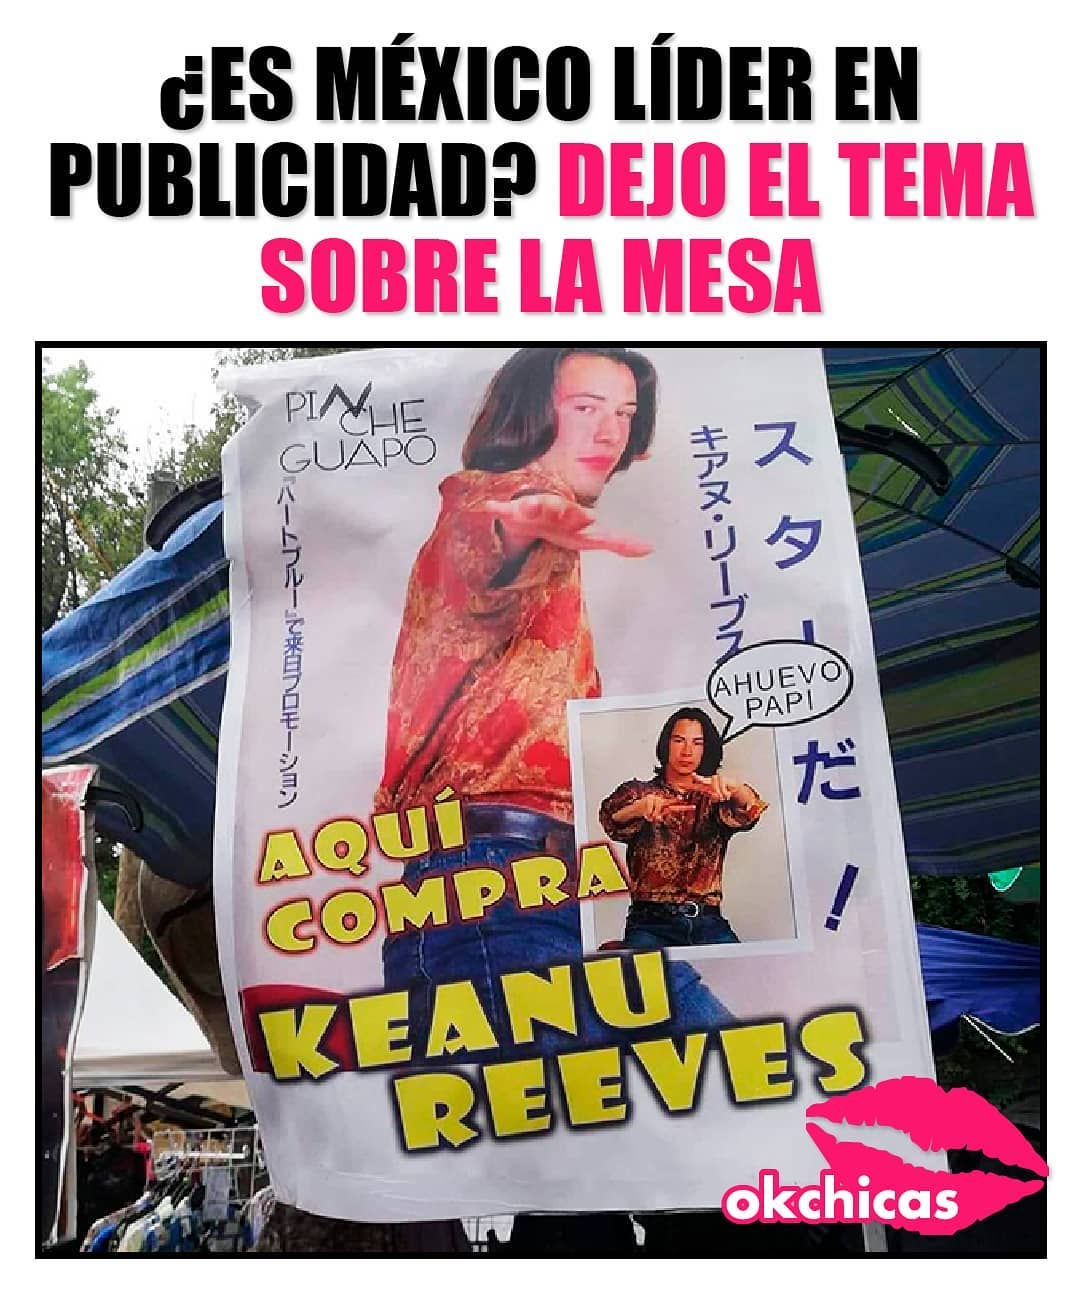 ¿Es México líder en la publicidad? Dejo el tema sobre la mesa.  Aquí compra Keanu Reeves.